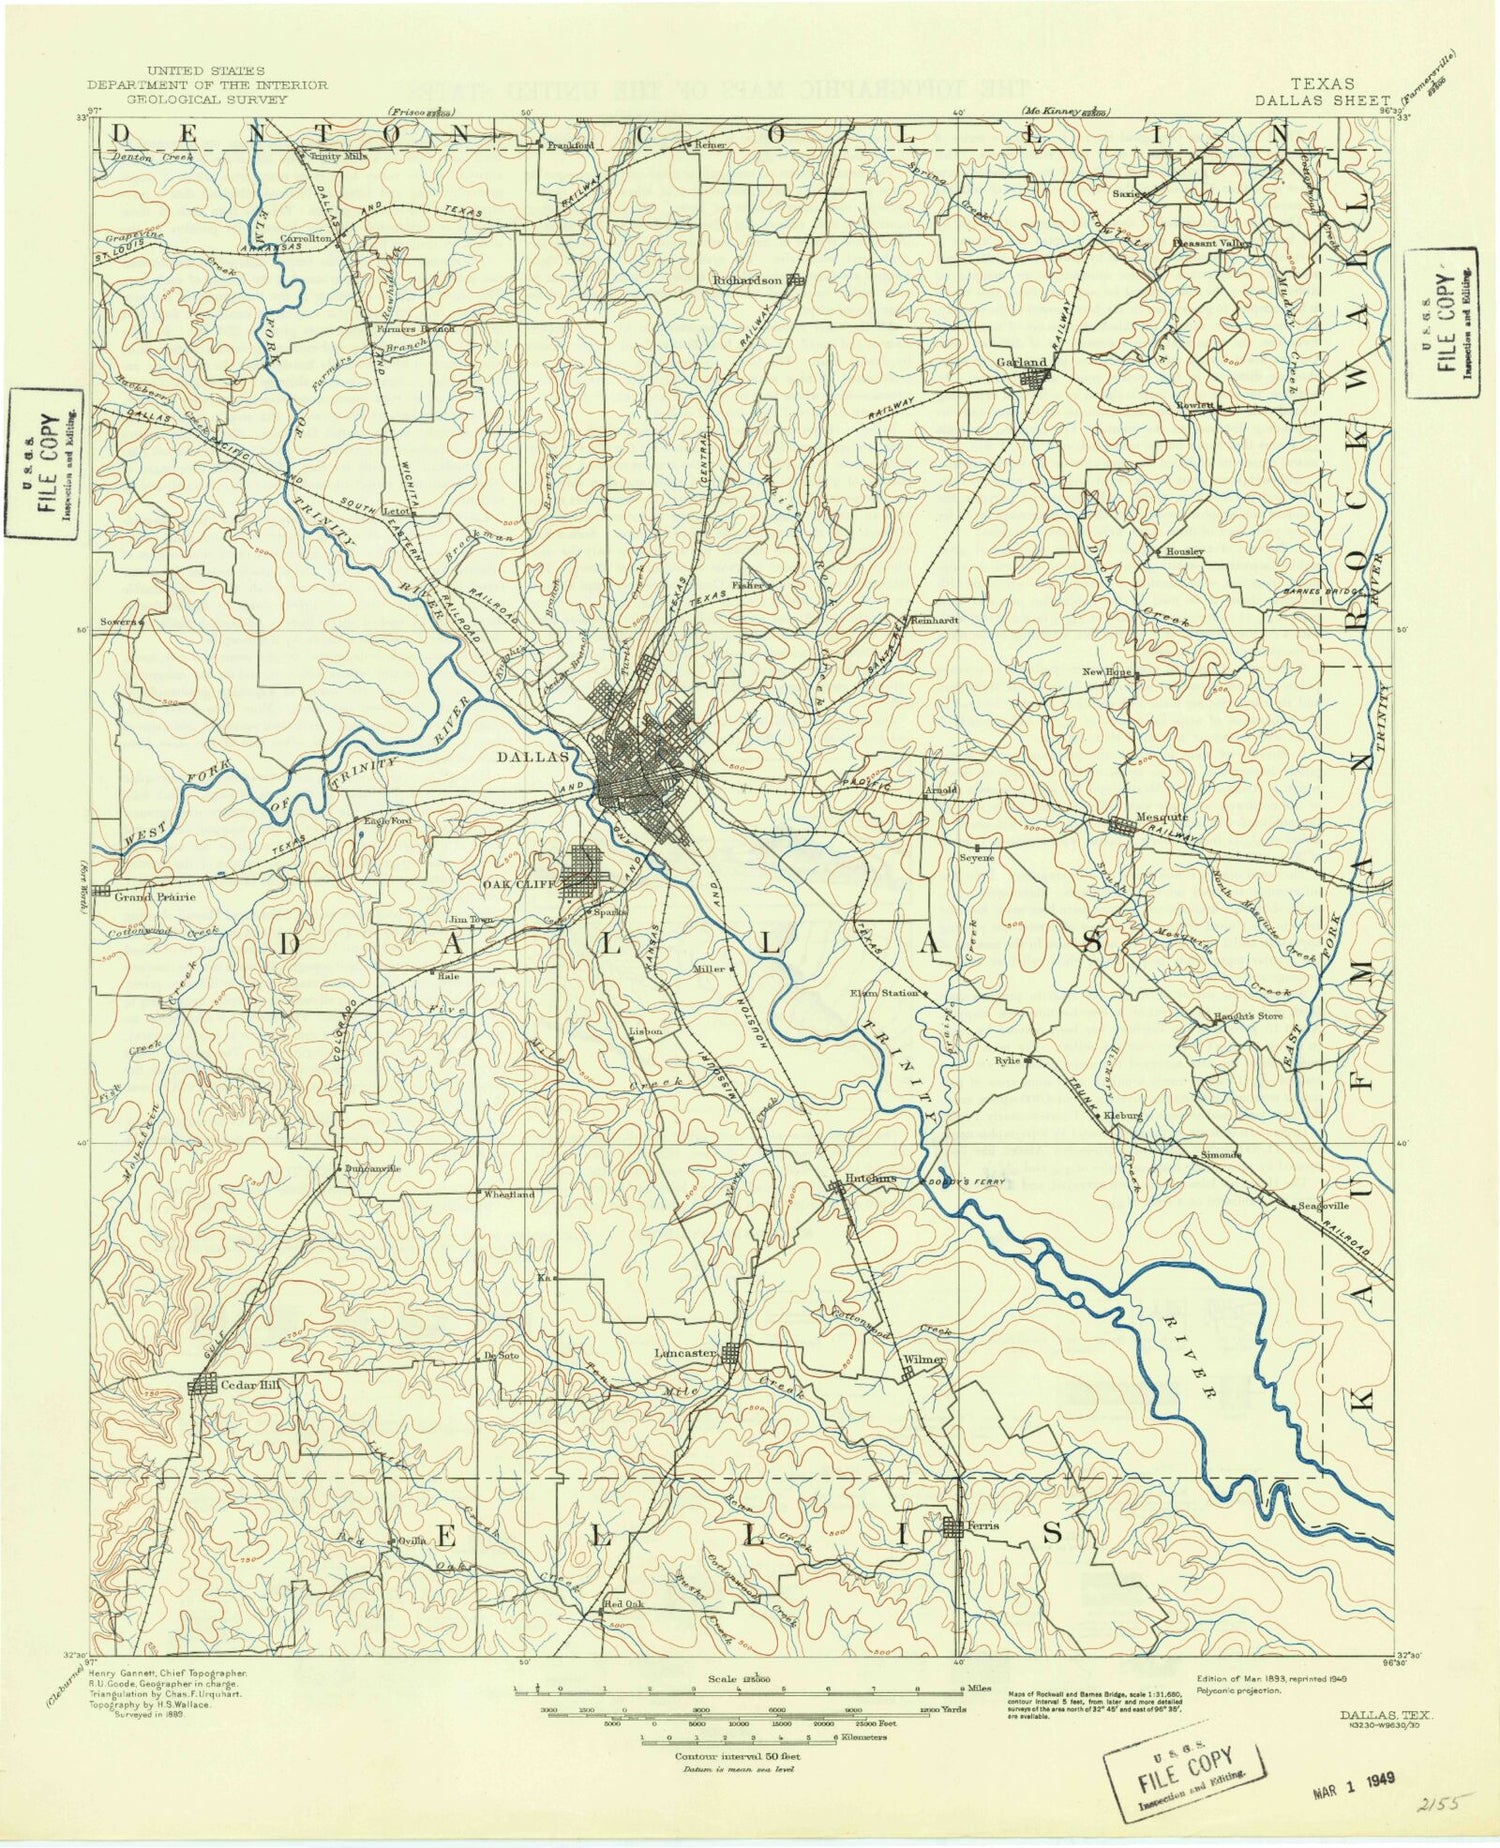 Historic 1893 Dallas Texas 30'x30' Topo Map Image